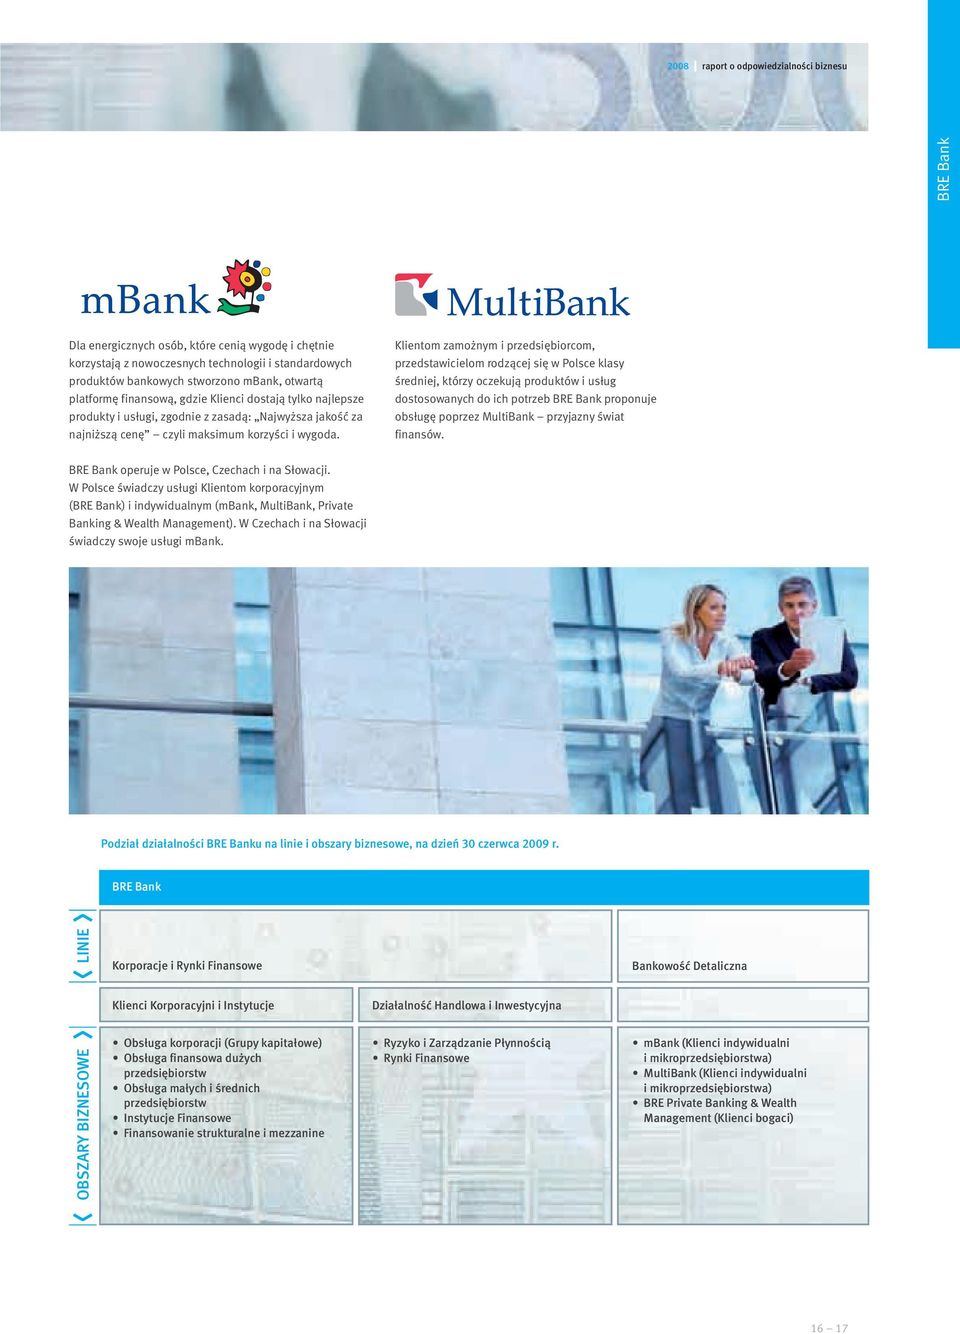 Klientom zamożnym i przedsiębiorcom, przedstawicielom rodzącej się w Polsce klasy średniej, którzy oczekują produktów i usług dostosowanych do ich potrzeb BRE Bank proponuje obsługę poprzez MultiBank